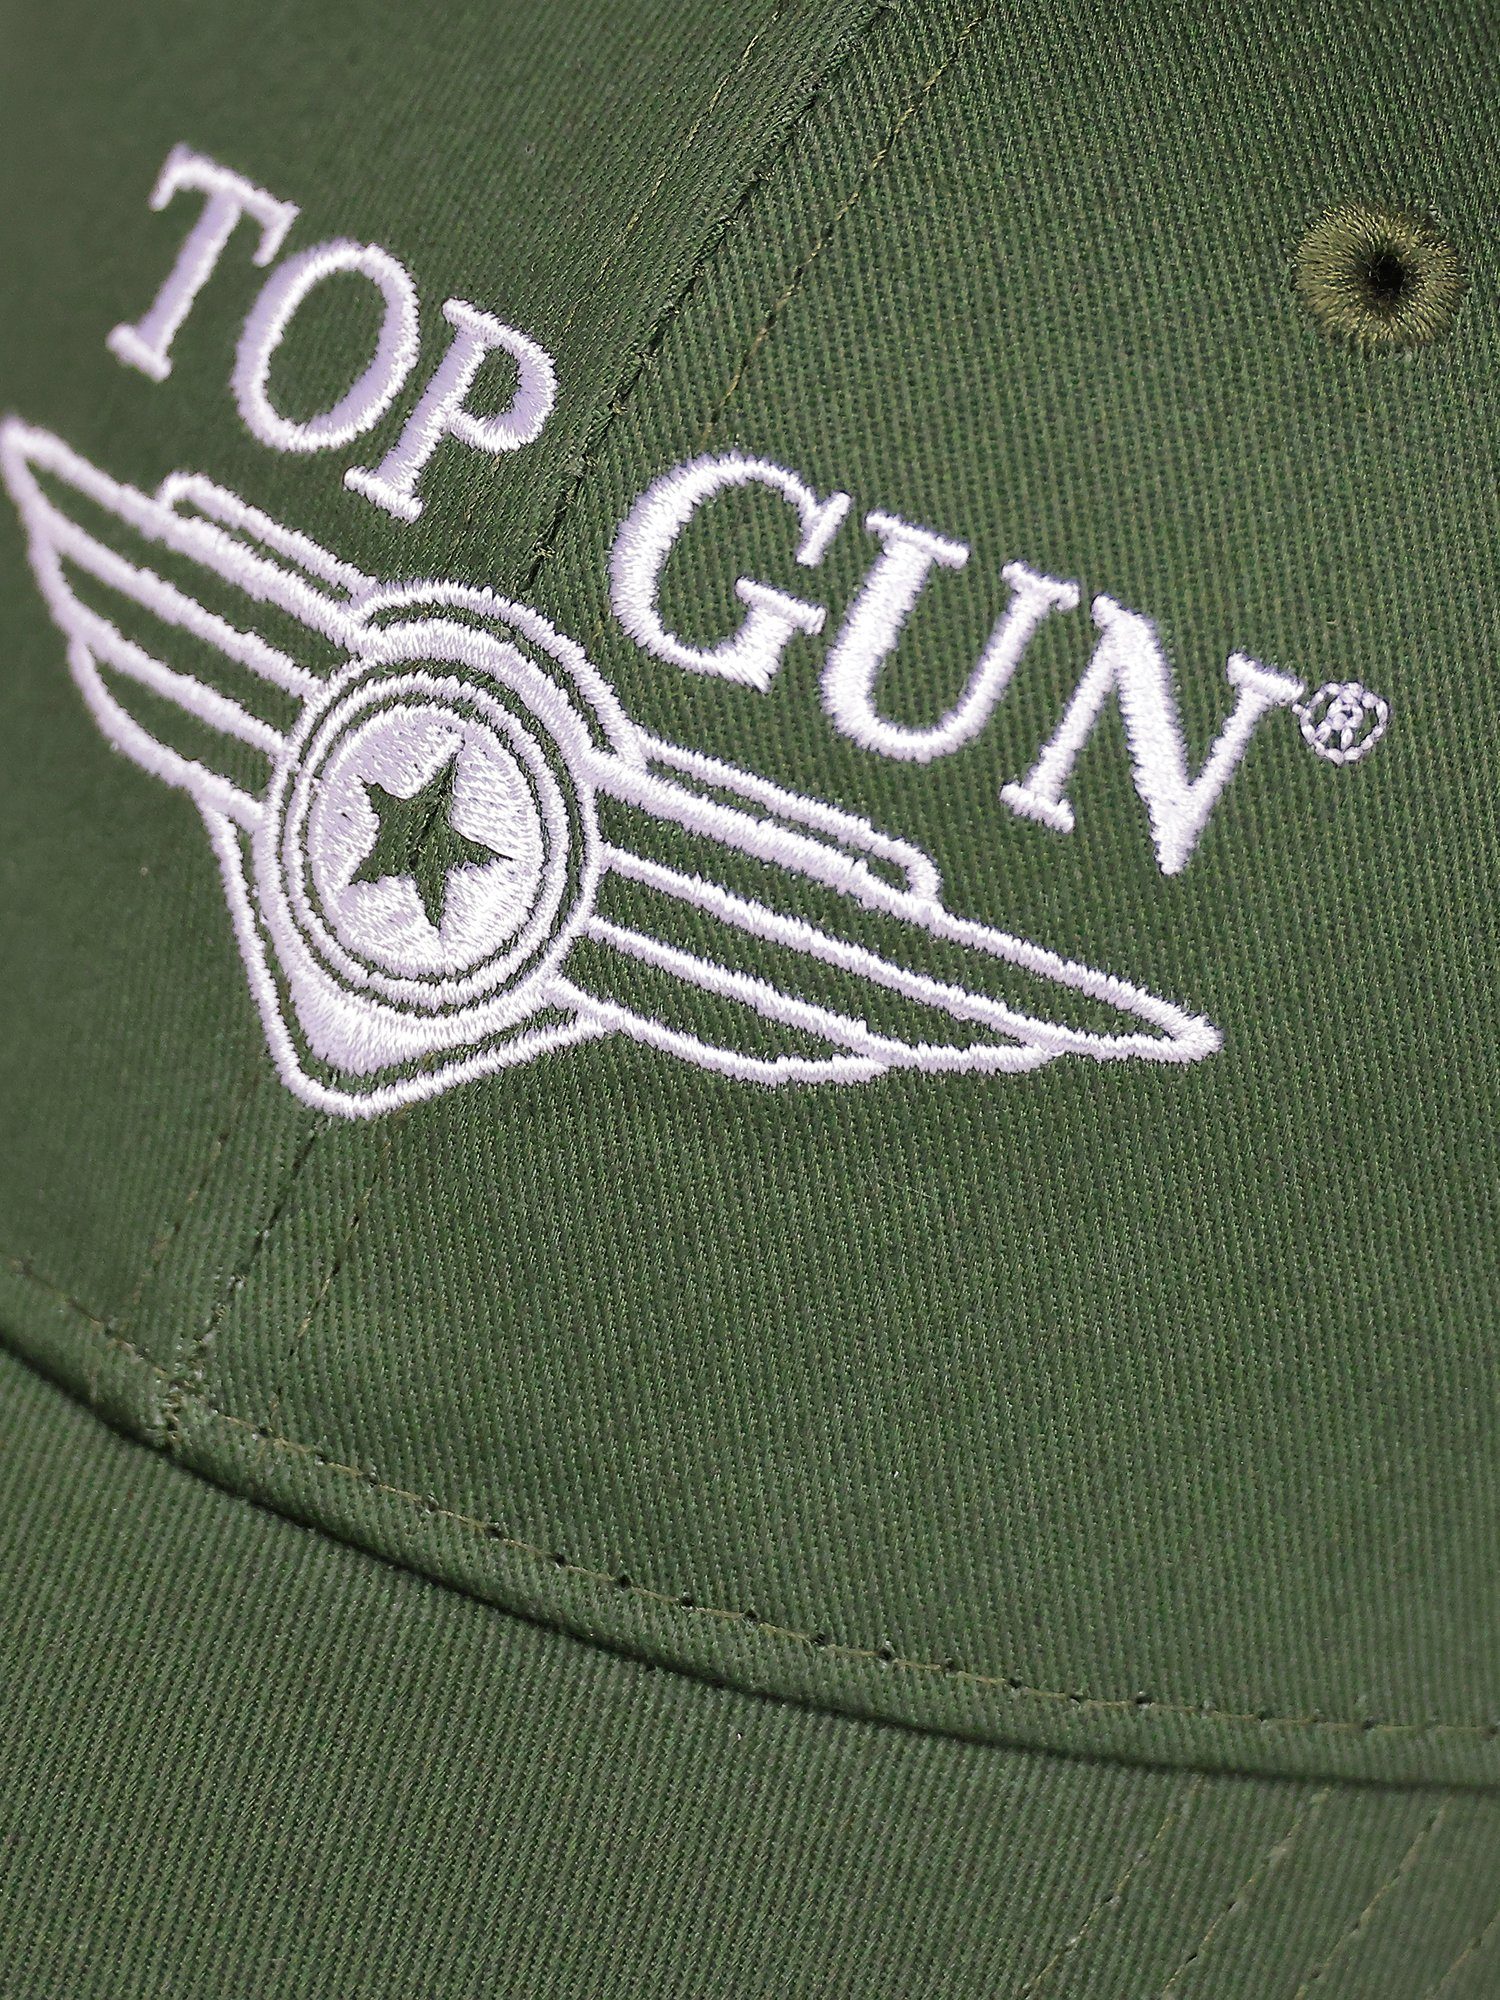 GUN Snapback TOP Cap olive TG22013